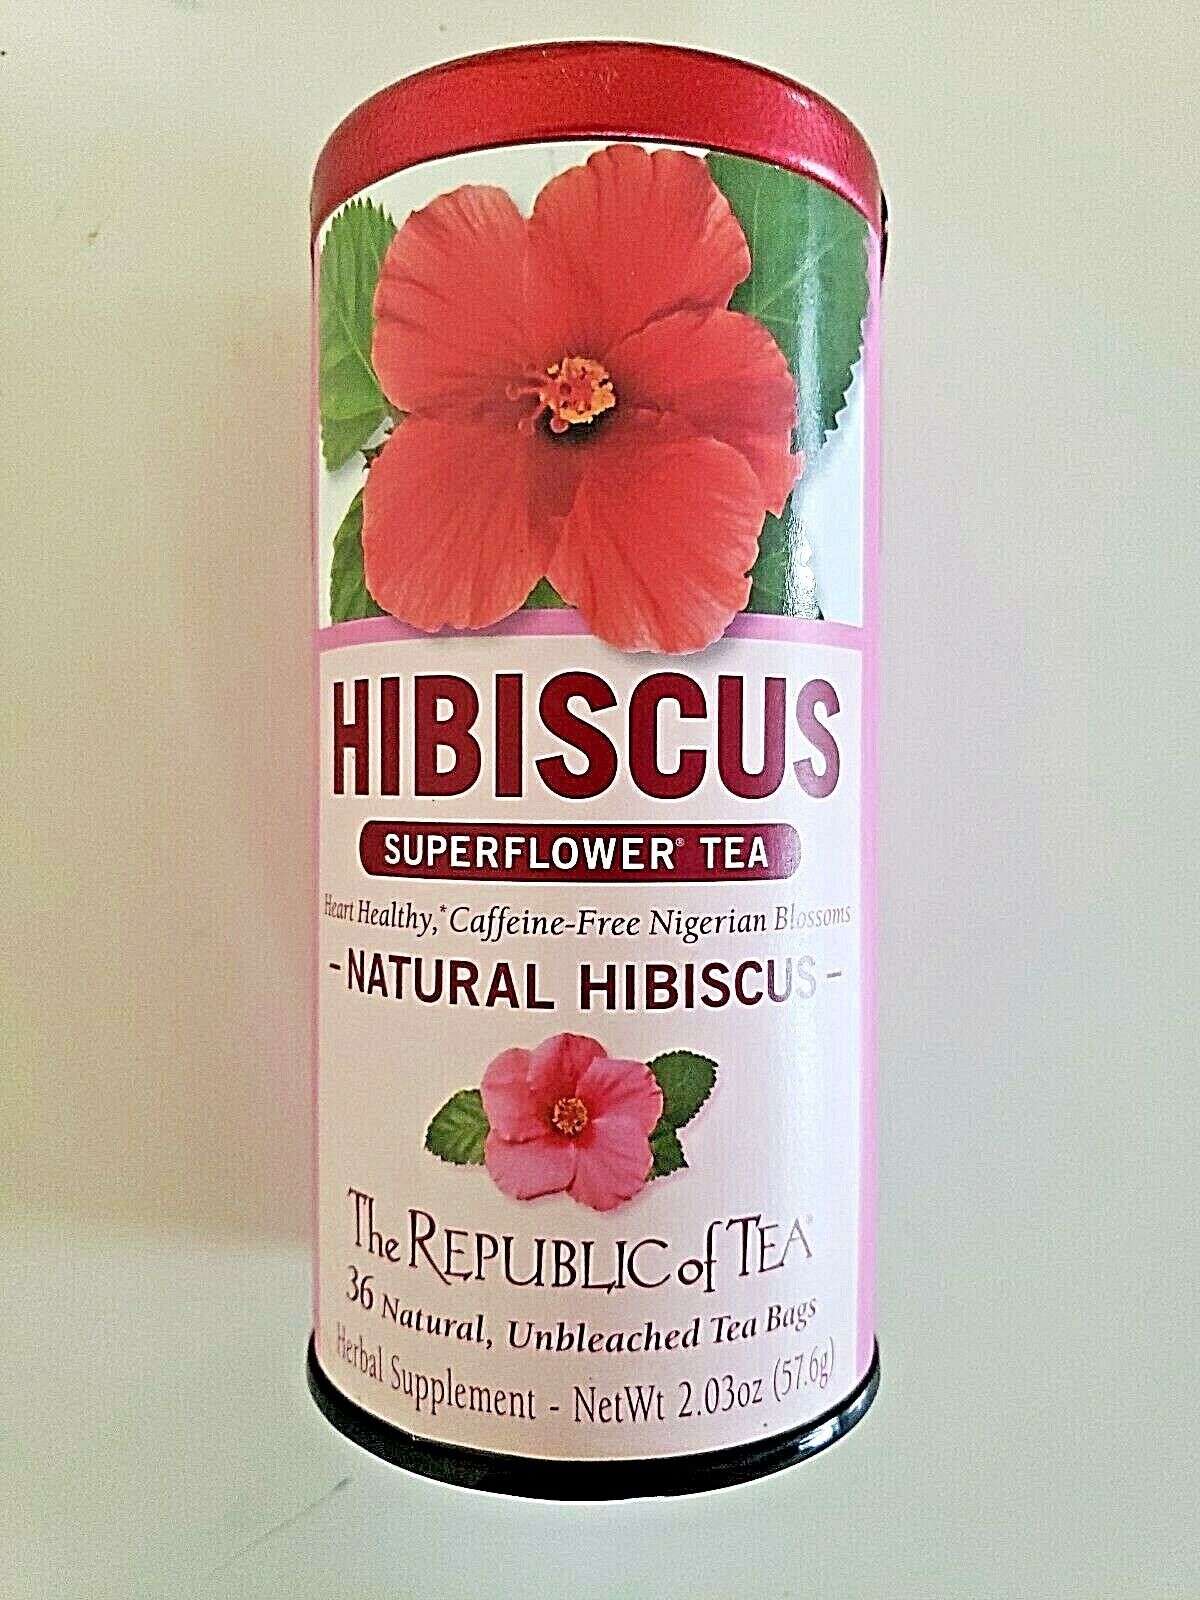 Ð§Ð°Ð¹ Hibiscus Superflower Tea by The Republic of Tea, 36 Tea bag. 